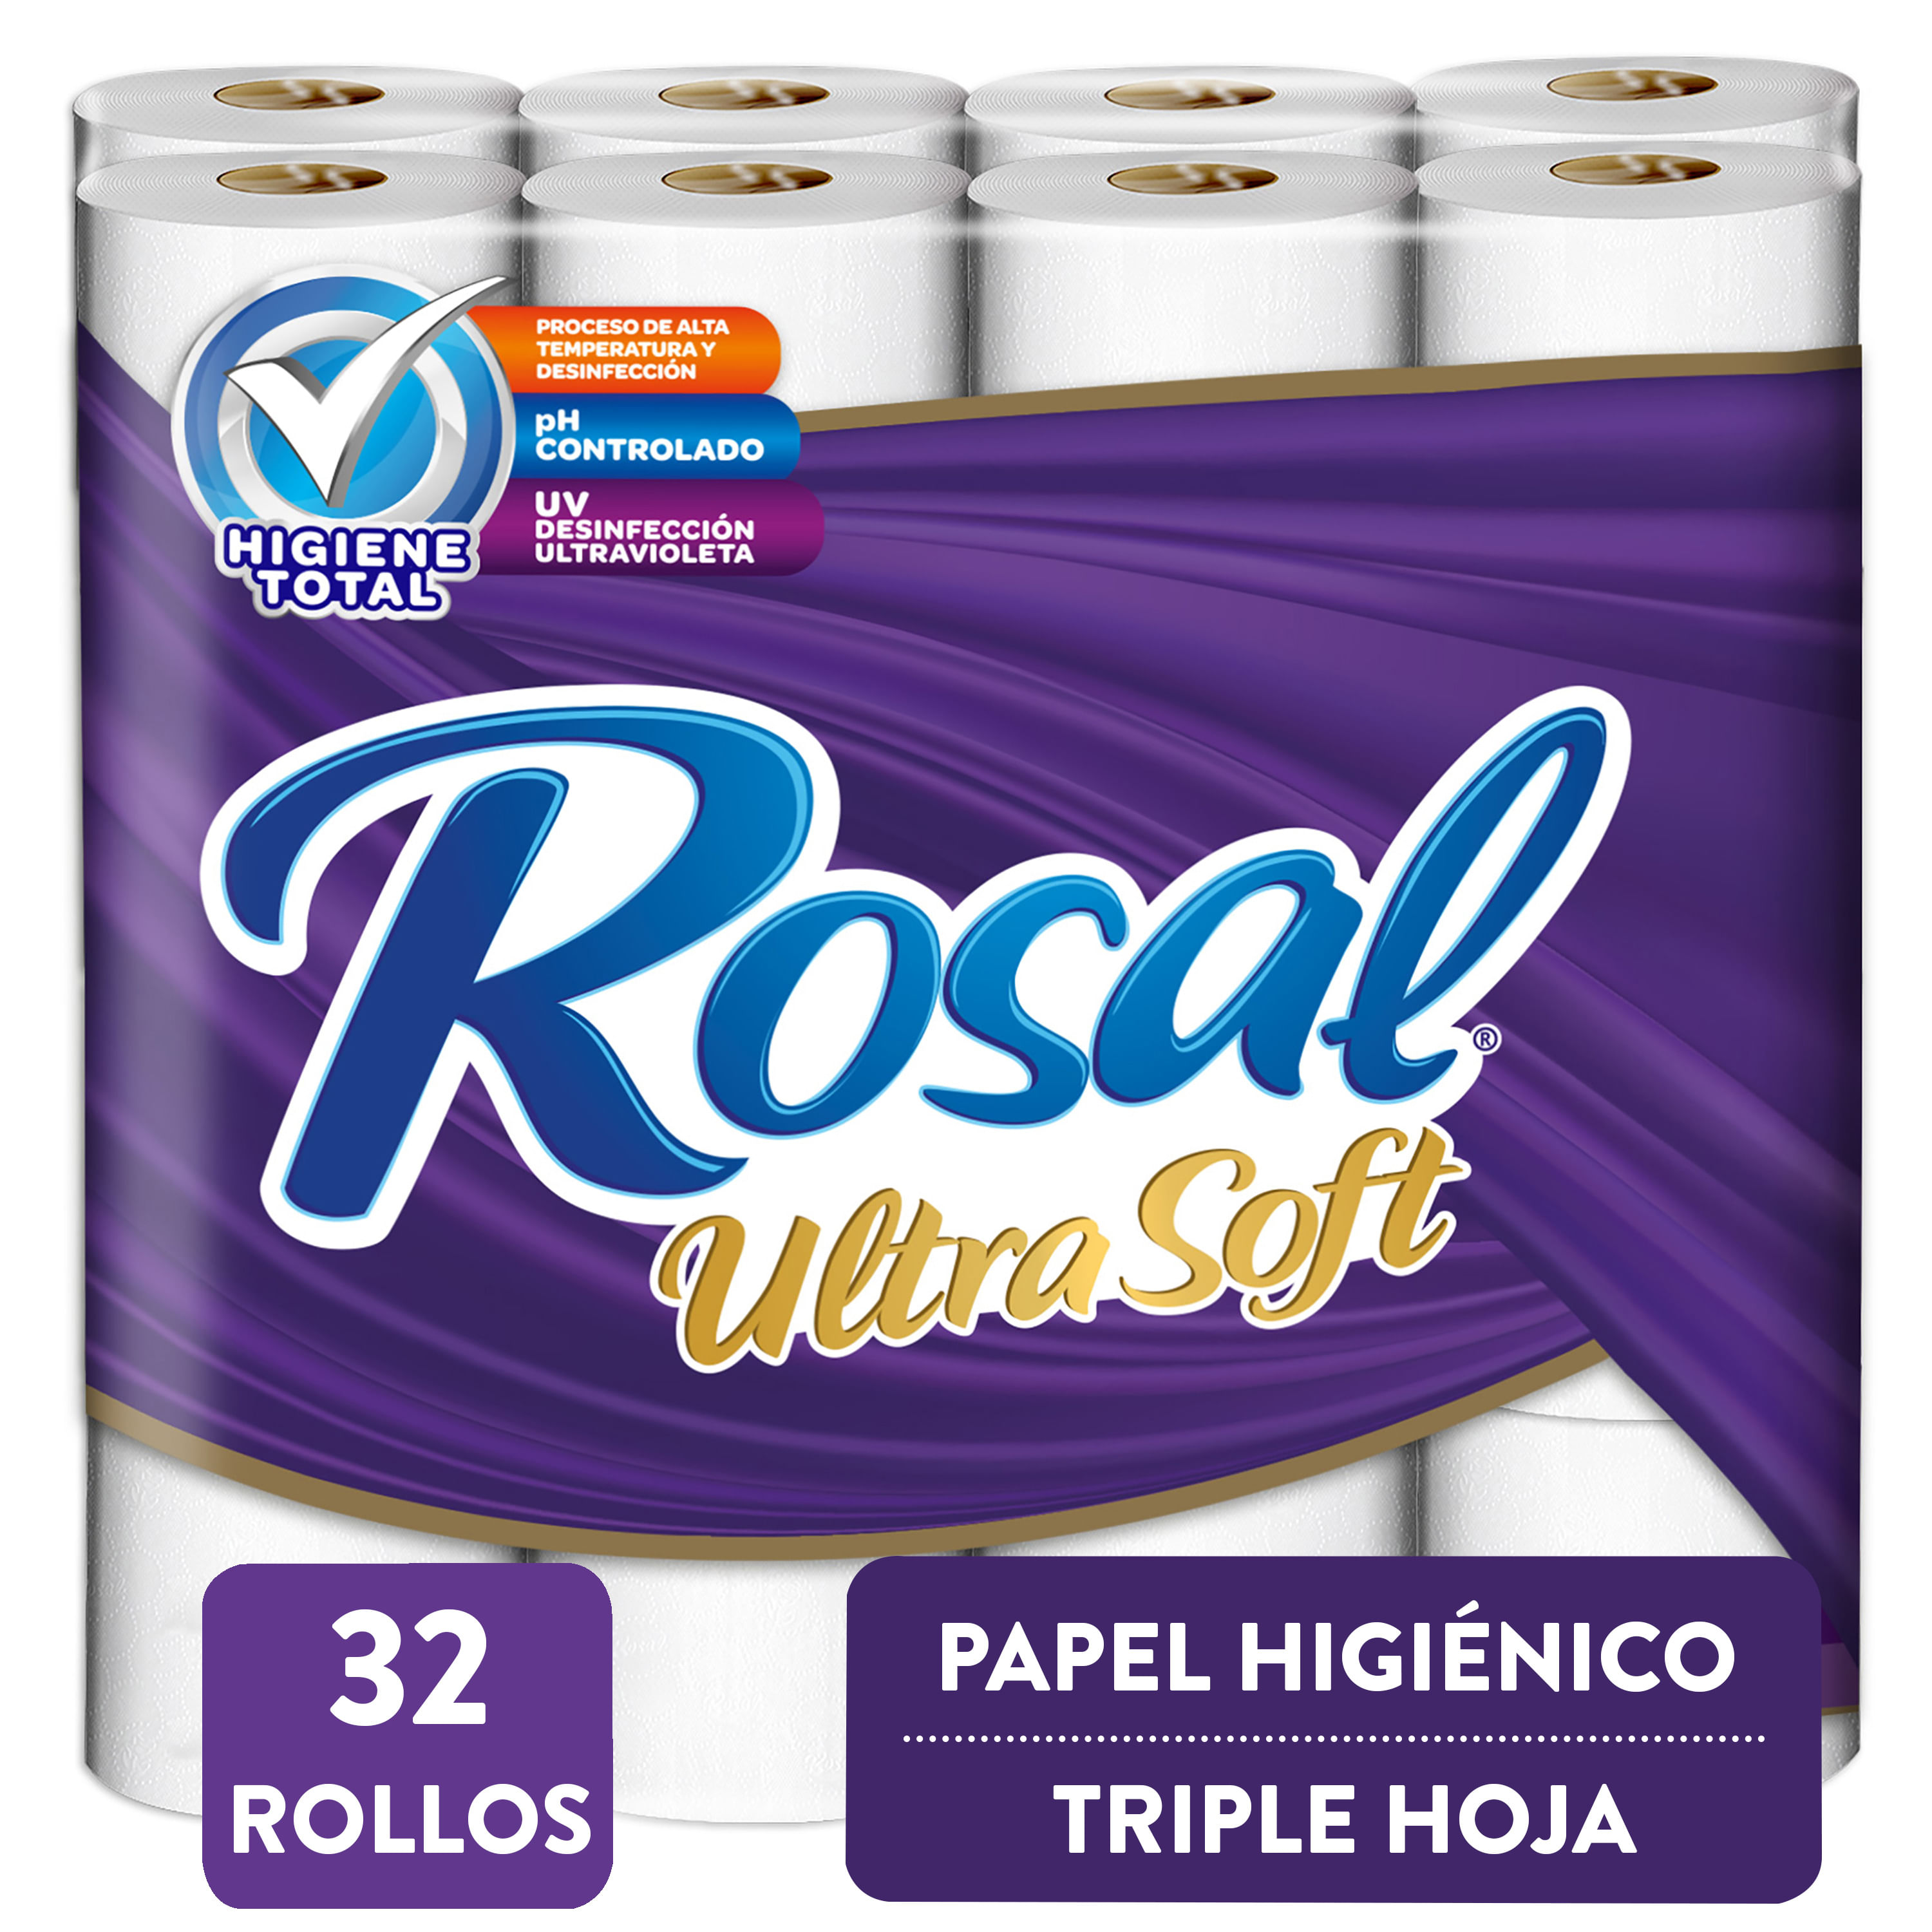 Papel-Higi-nico-Marca-Rosal-Ultra-Soft-Higiene-Total-Morado-Triple-Hoja-Suavidad-Resistencia-y-Rendimeinto-260-Hojas-32-Rollos-1-28818